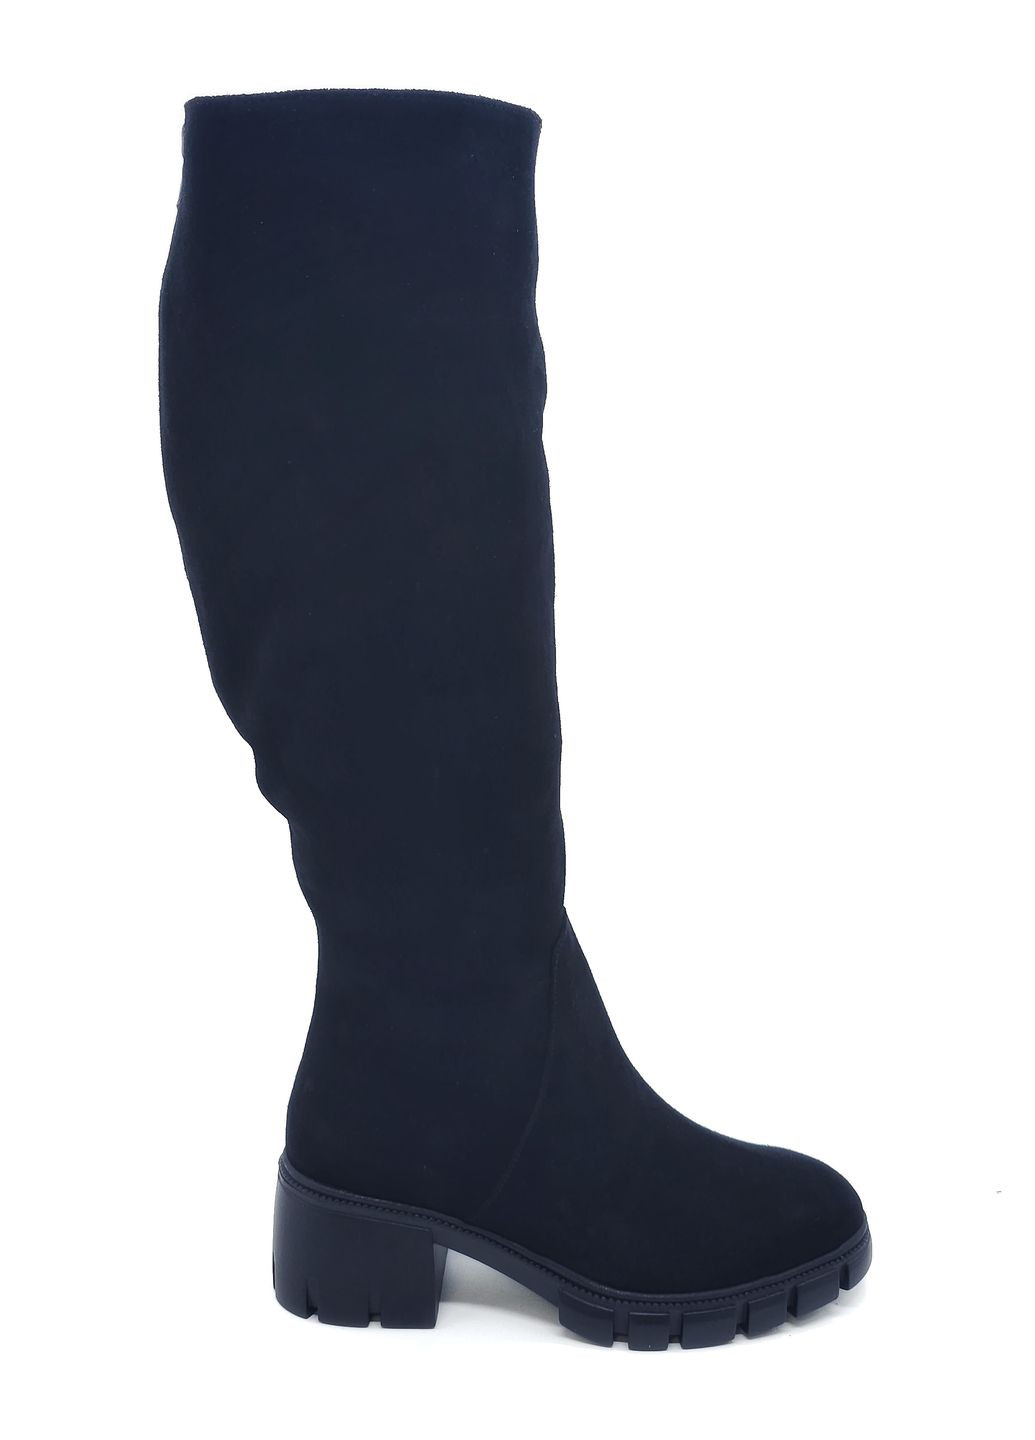 Жіночі чоботи єврозима чорні замшеві MR-20-1 23,5 см (р) Morento (271828047)